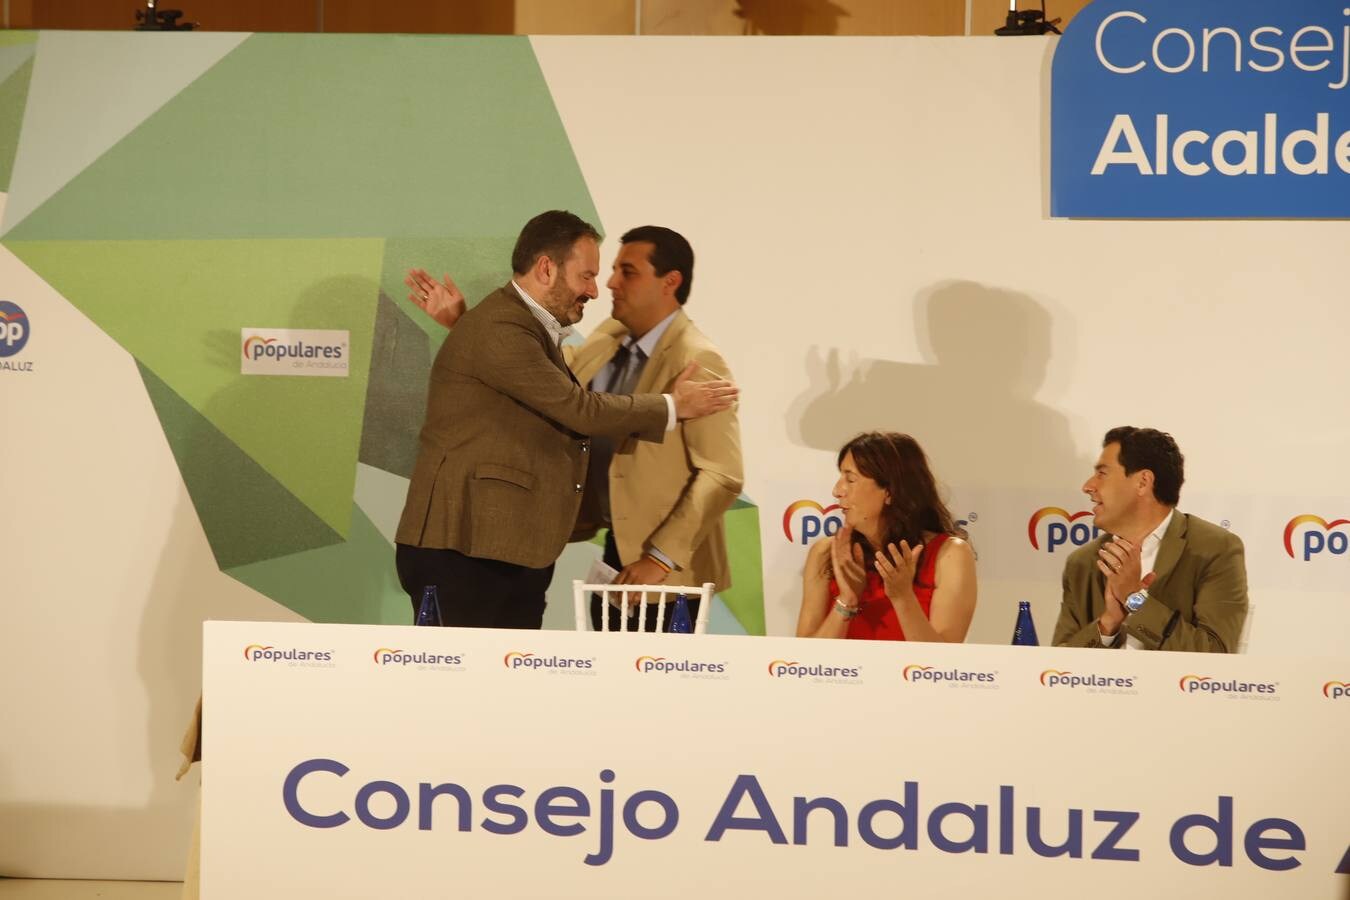 El Consejo Andaluz de Alcaldes del PP en Córdoba, en imágenes